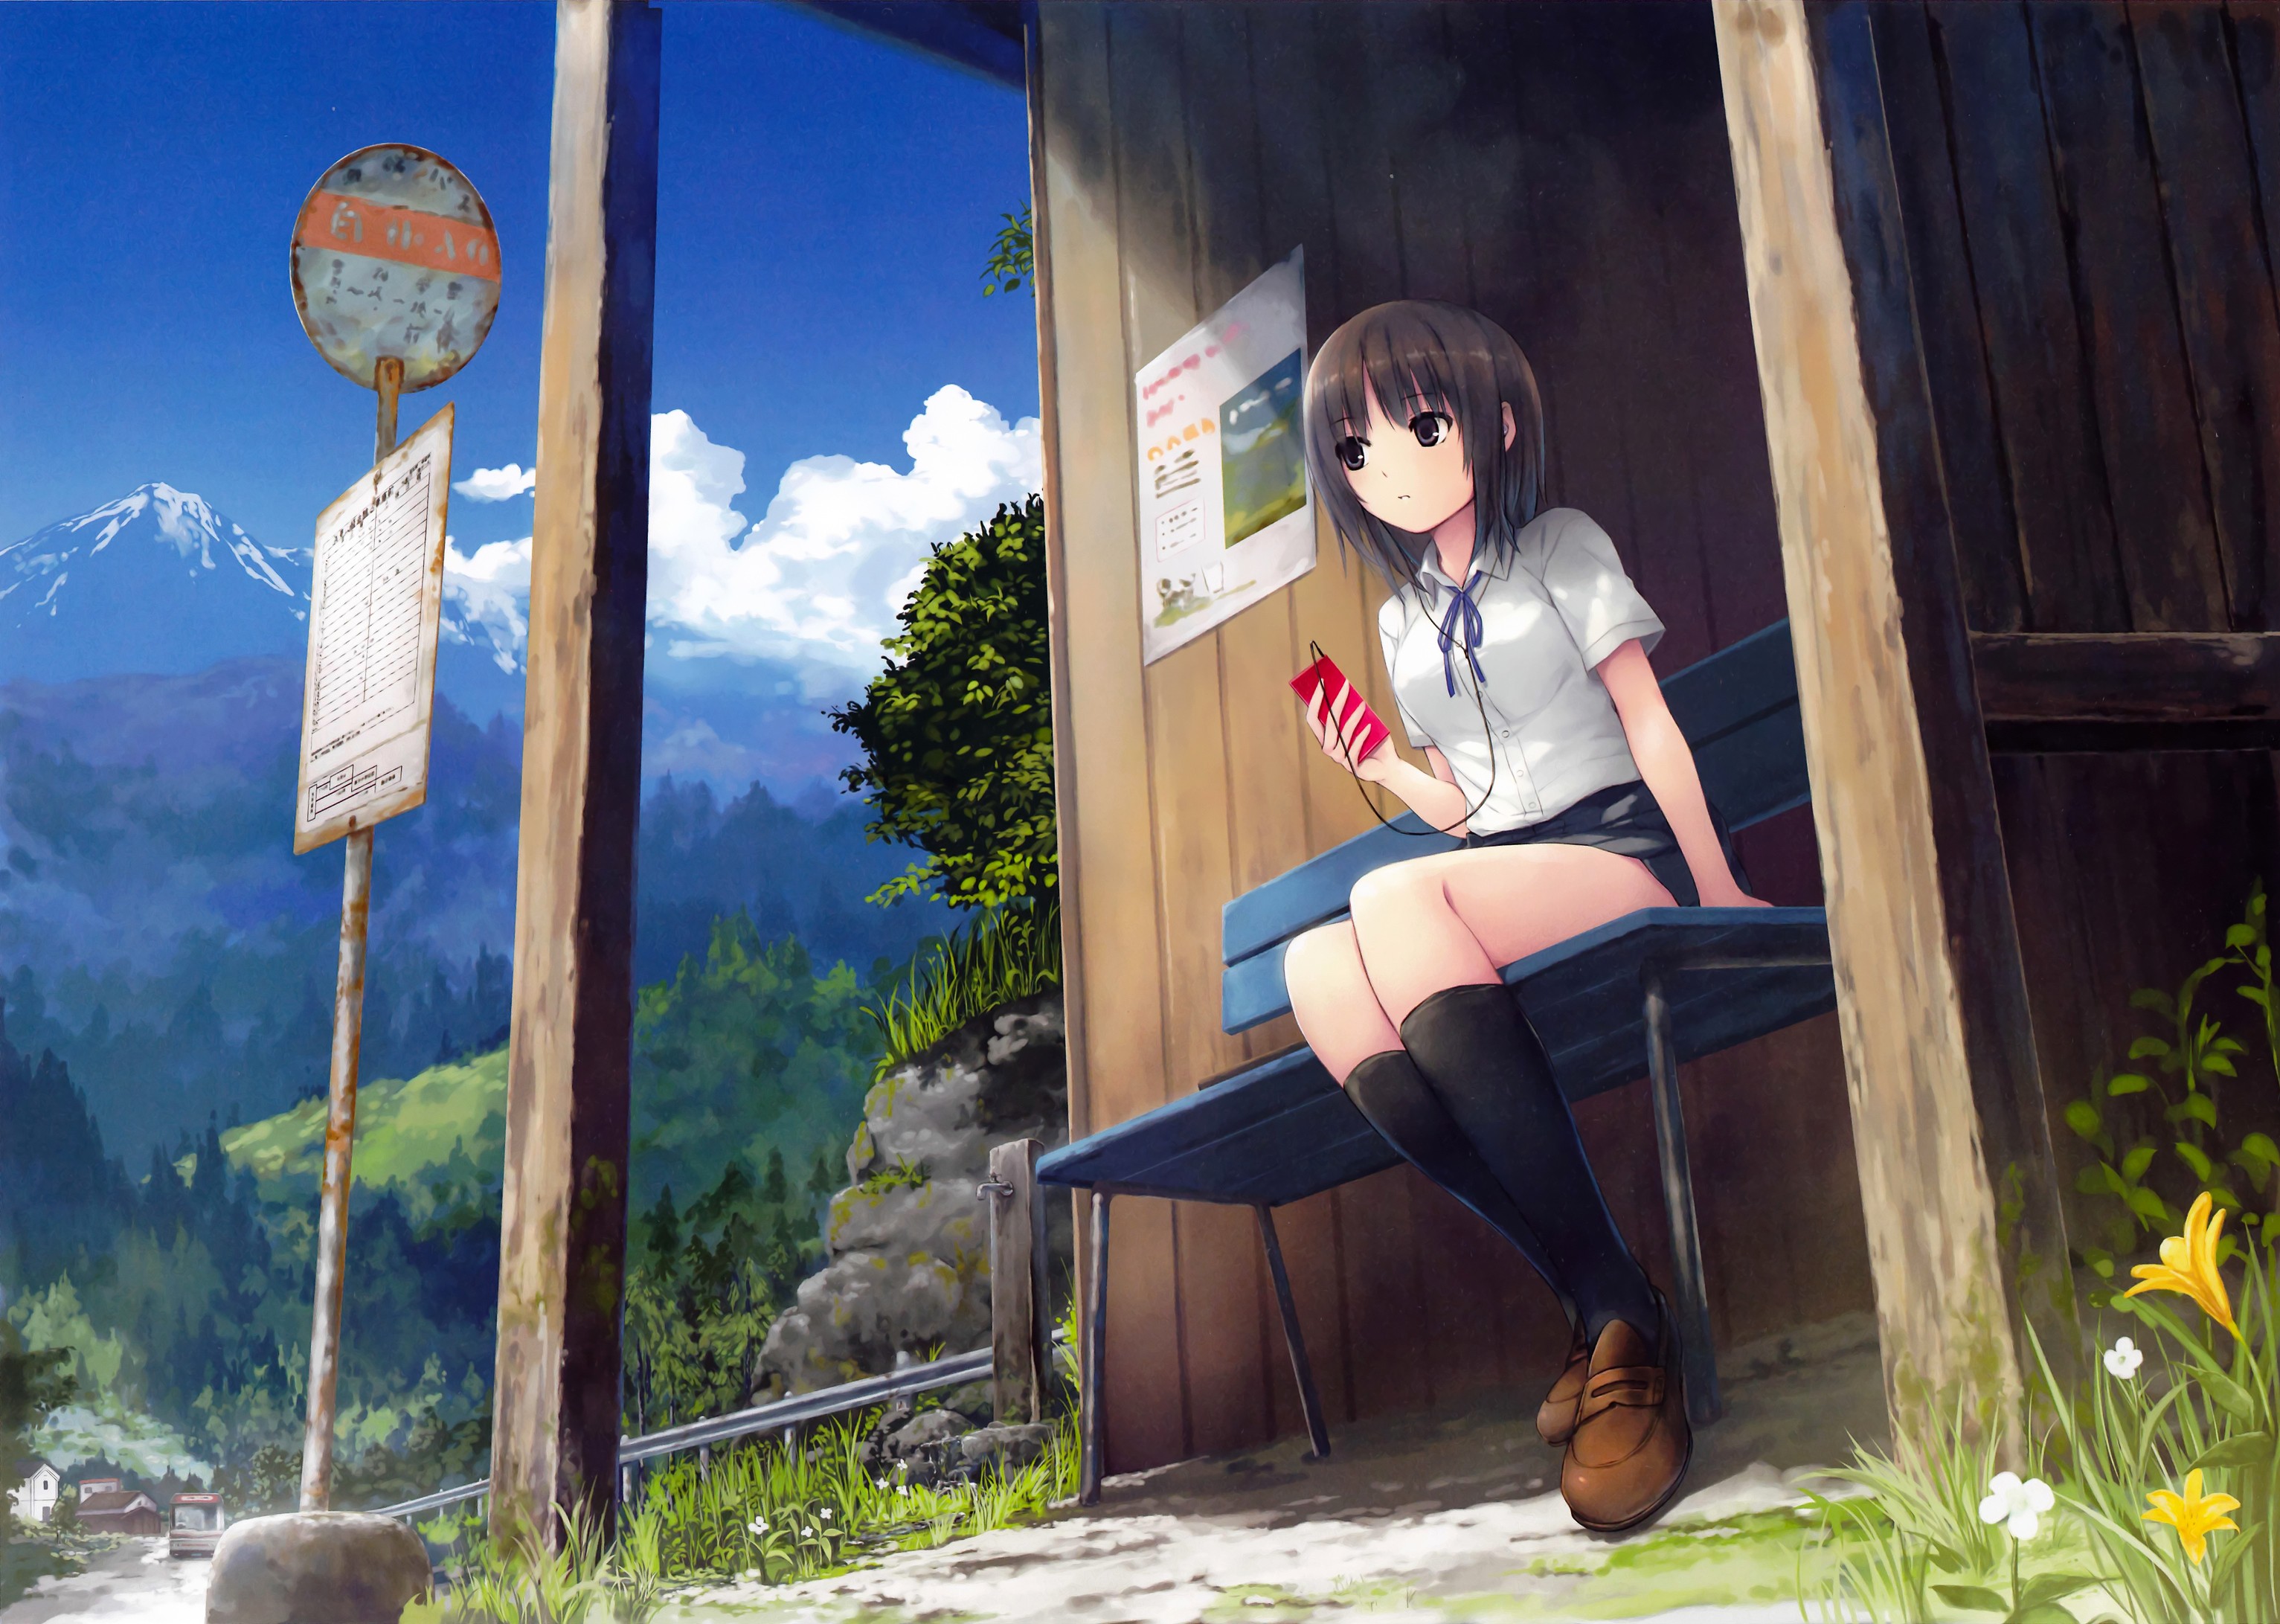 Anime 3065x2183 anime cellphone anime girls sitting bus stop brunette socks mountains